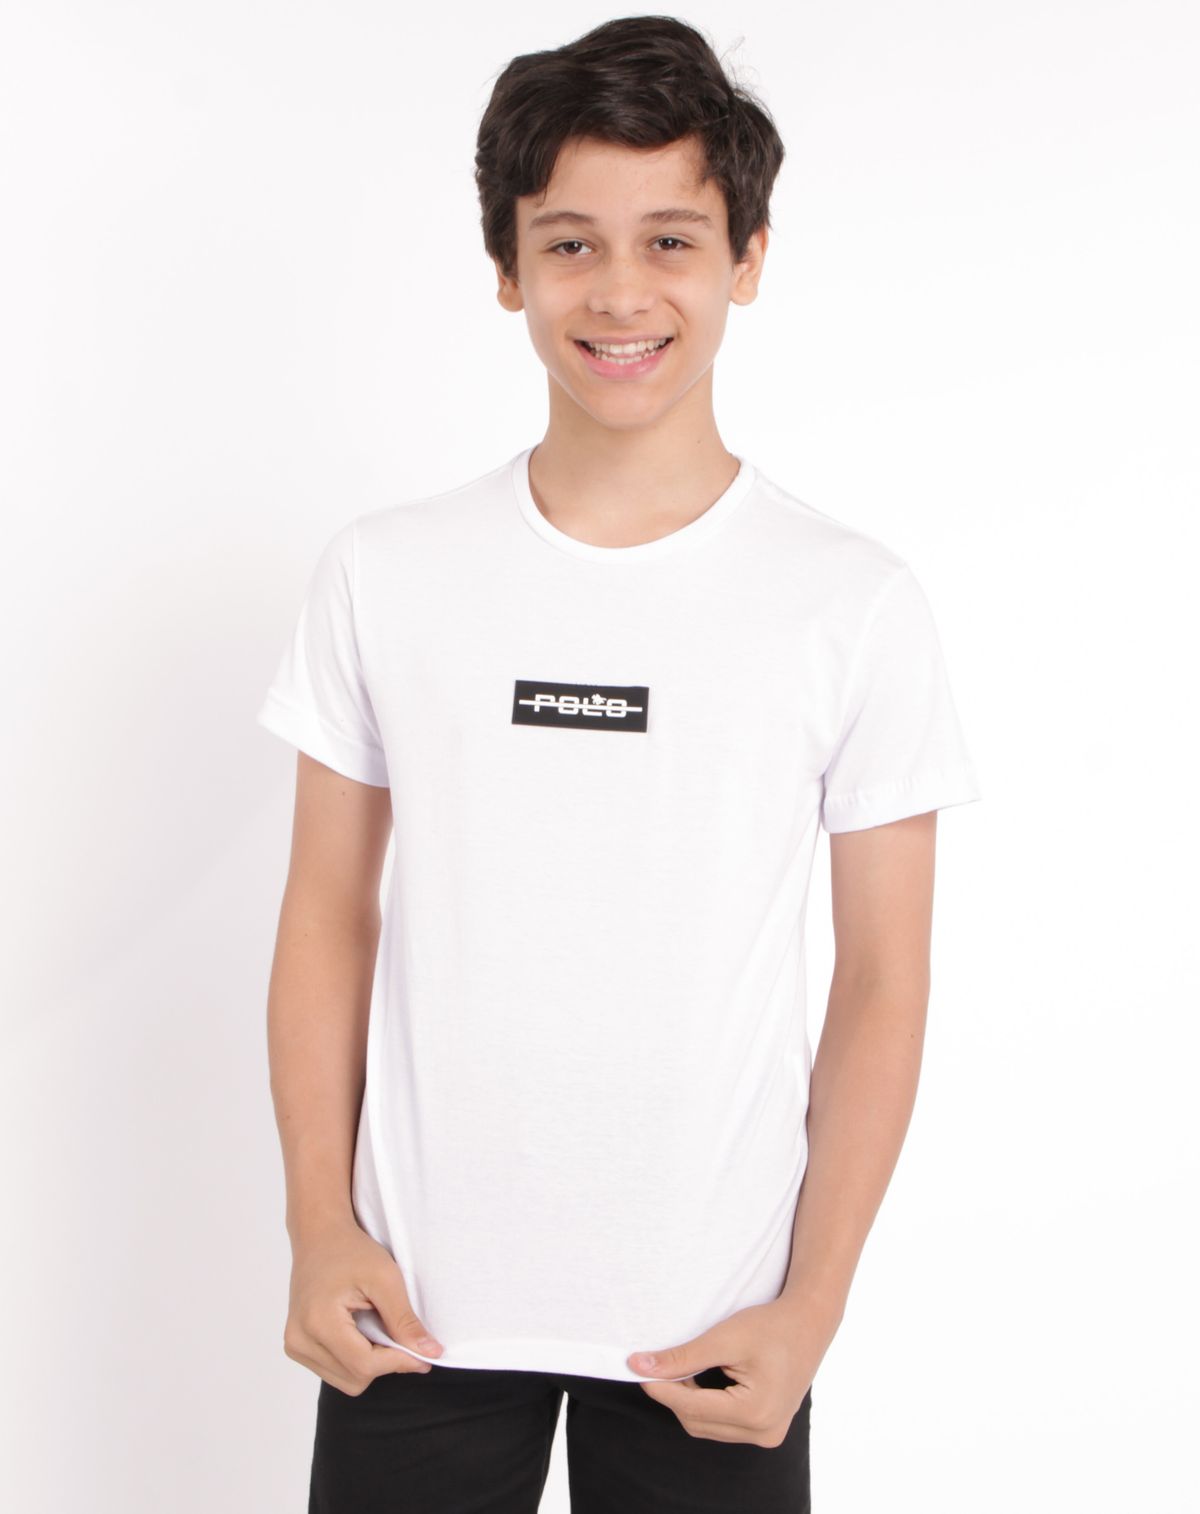 679664002-camiseta-manga-curta-juvenil-menino-polo-branco-12-699